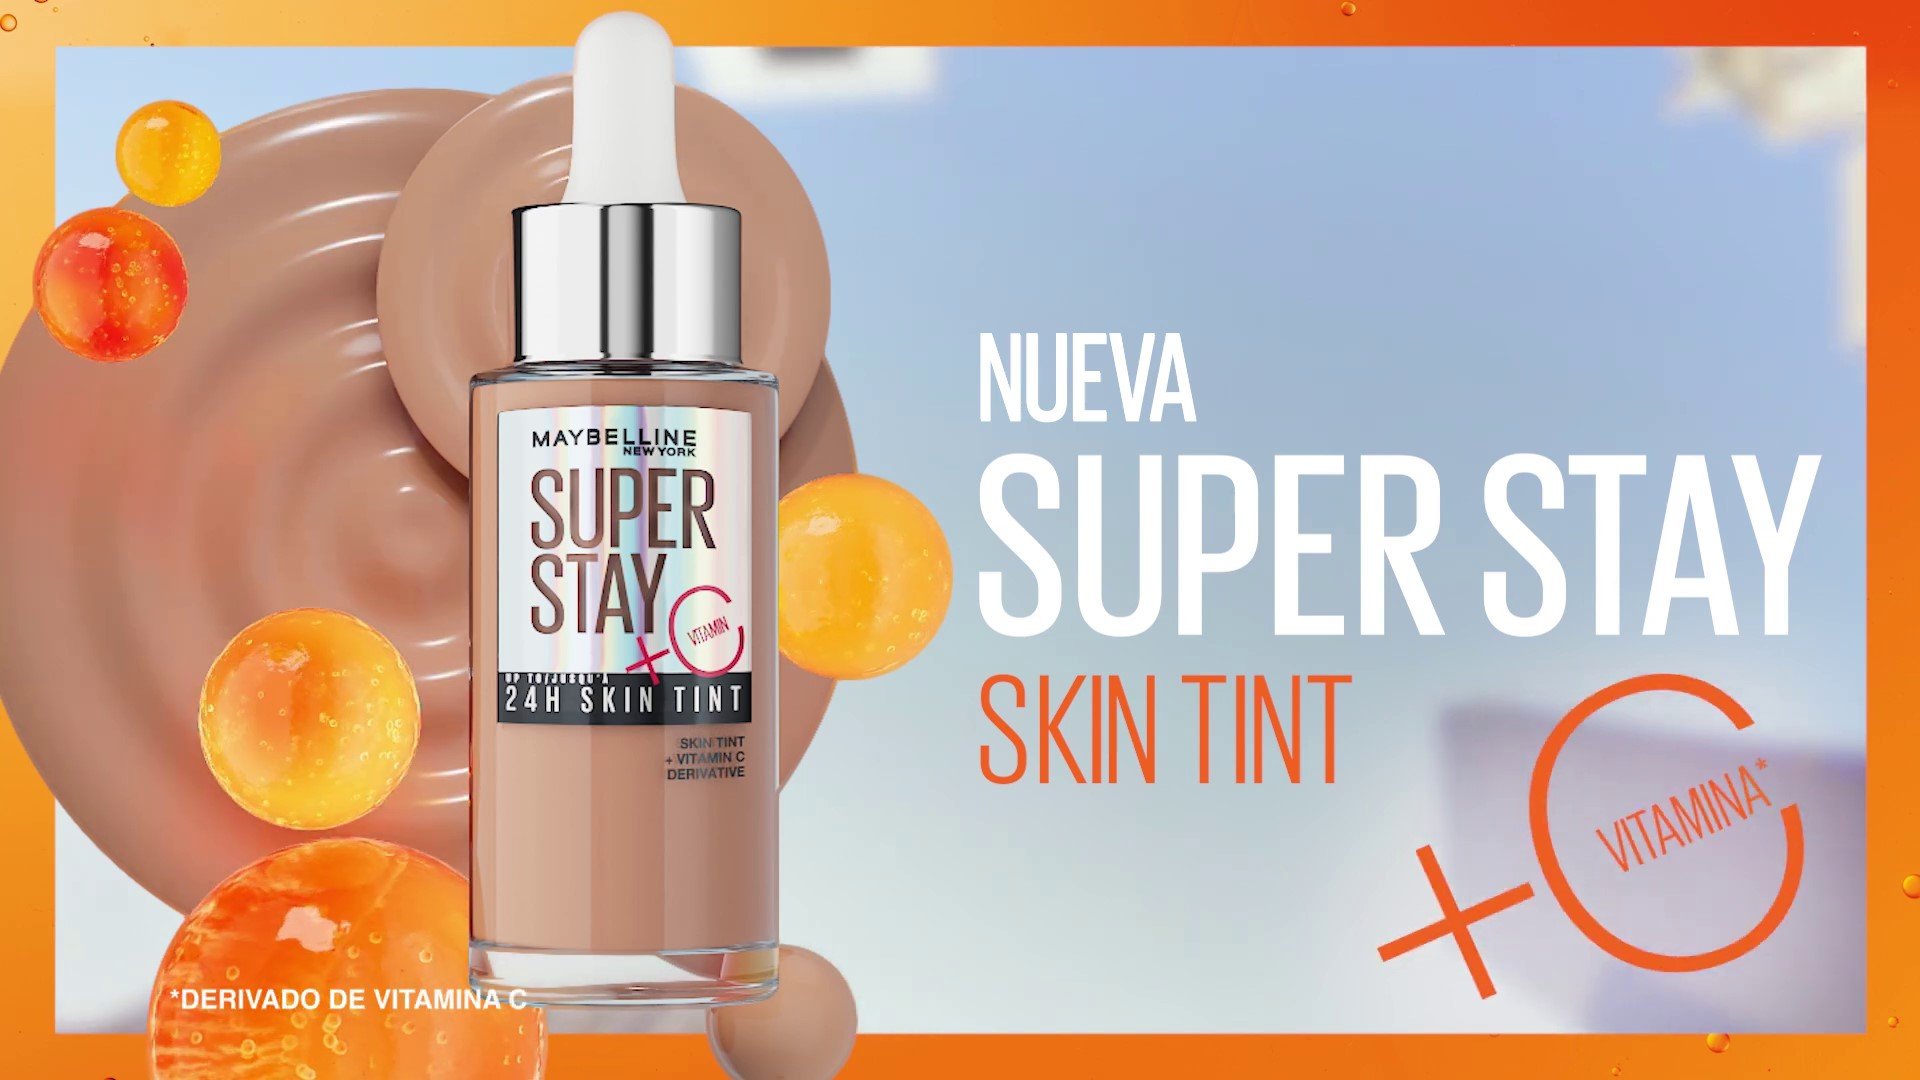 Vamos a poner la prueba la nueva 24hr Super Stay Skin Tint de